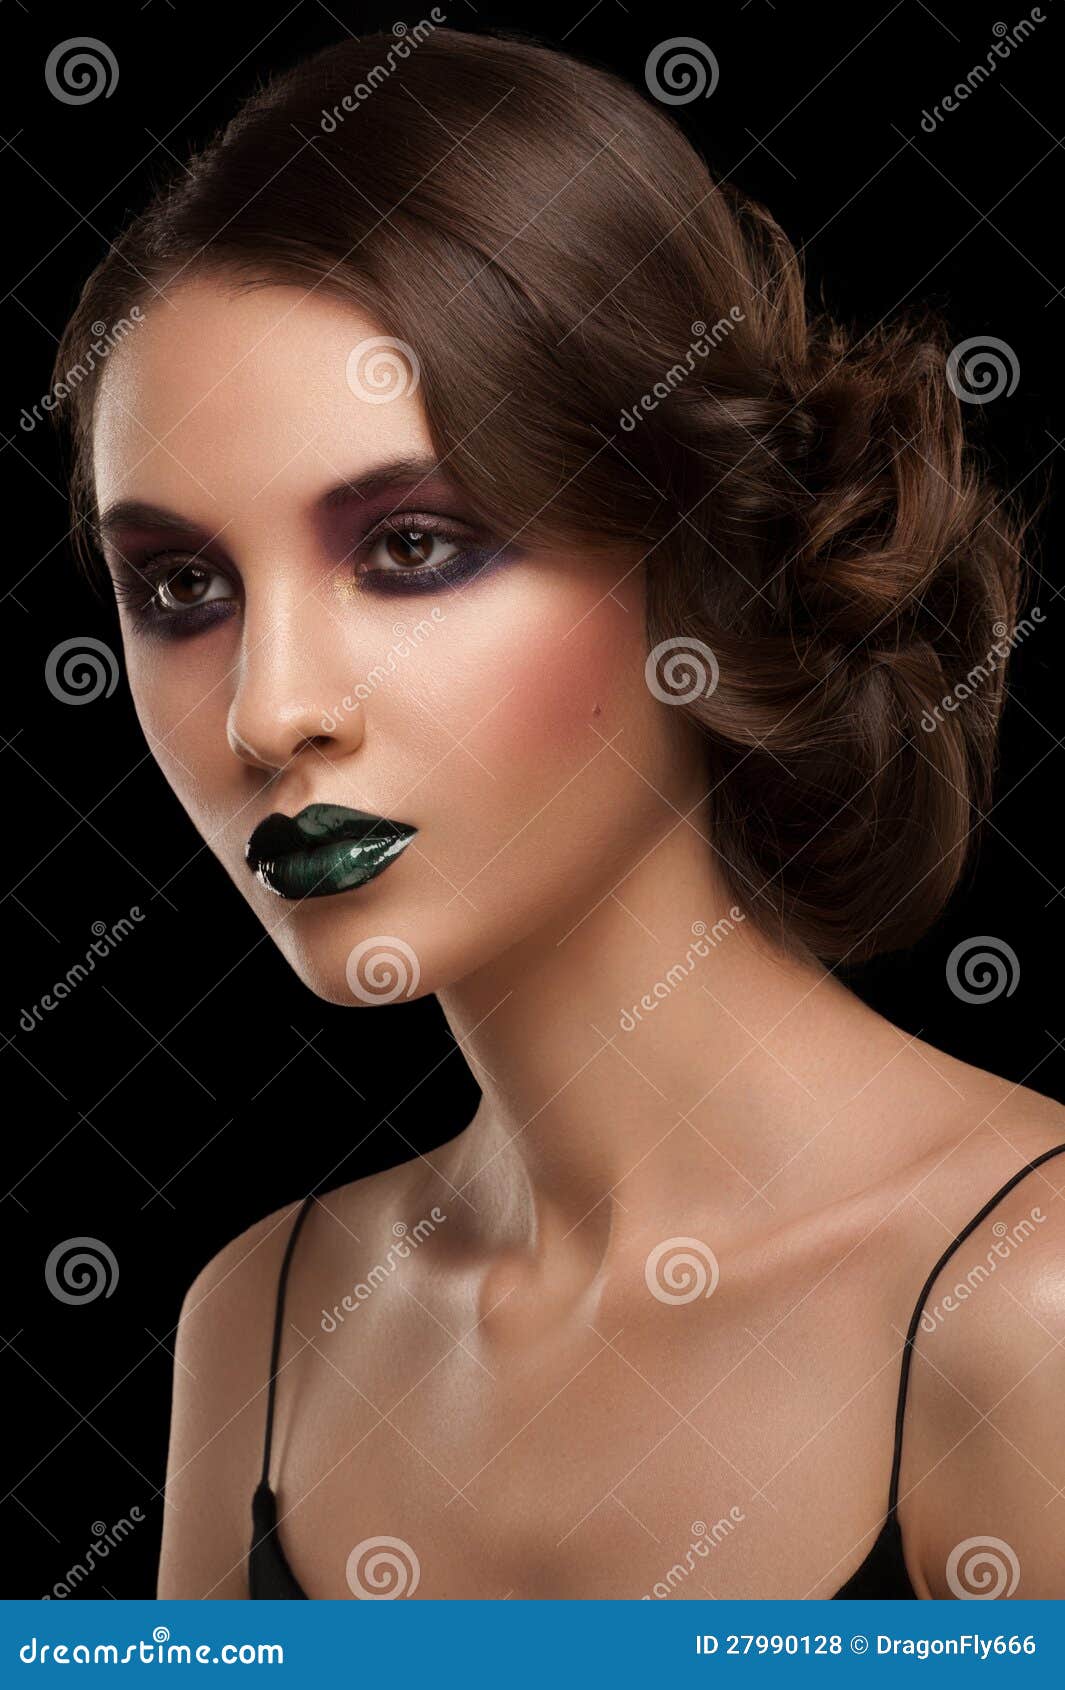 Frau mit Make-up und Frisur. Porträt der attraktiven jungen Frau mit hellem kreativem Make-up und schöner Frisur